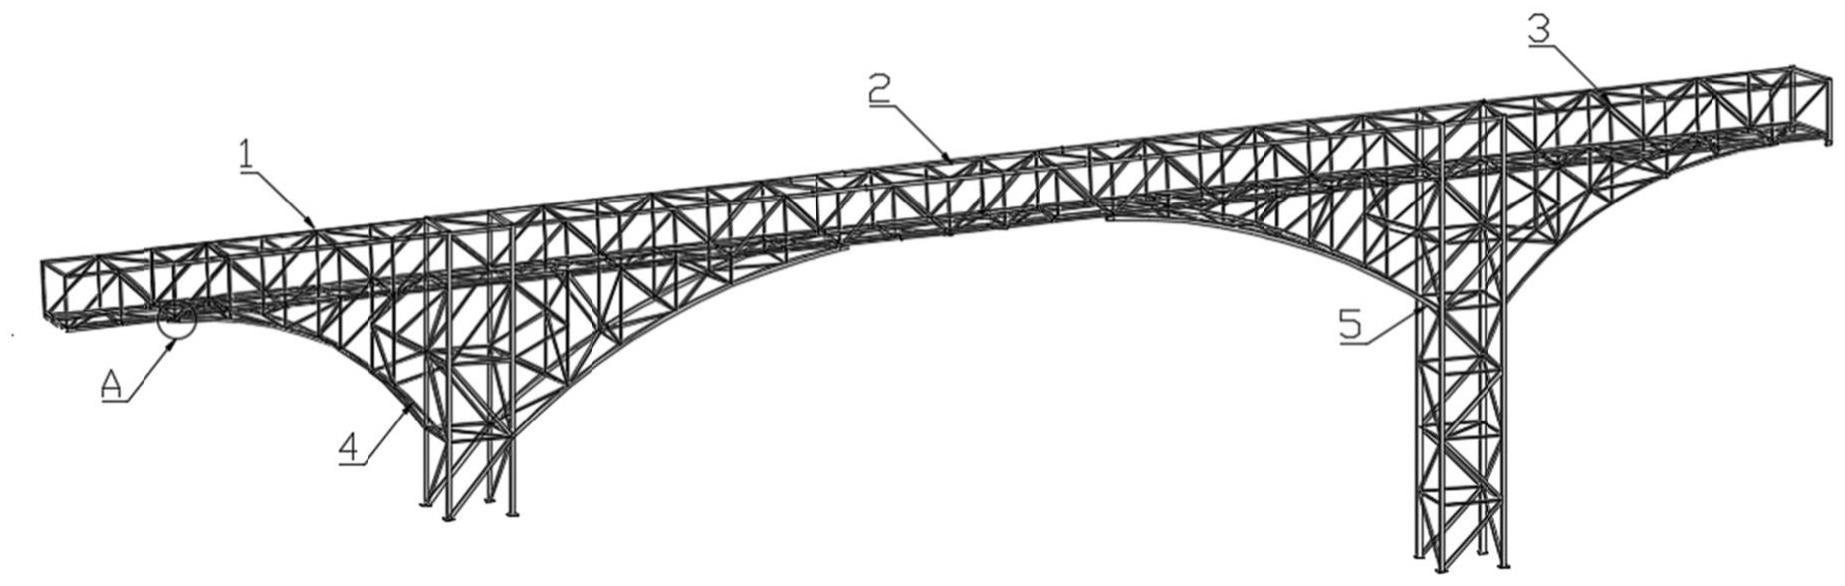 多跨连续拱形装配式桁架廊道结构、设计方法及装配方法与流程